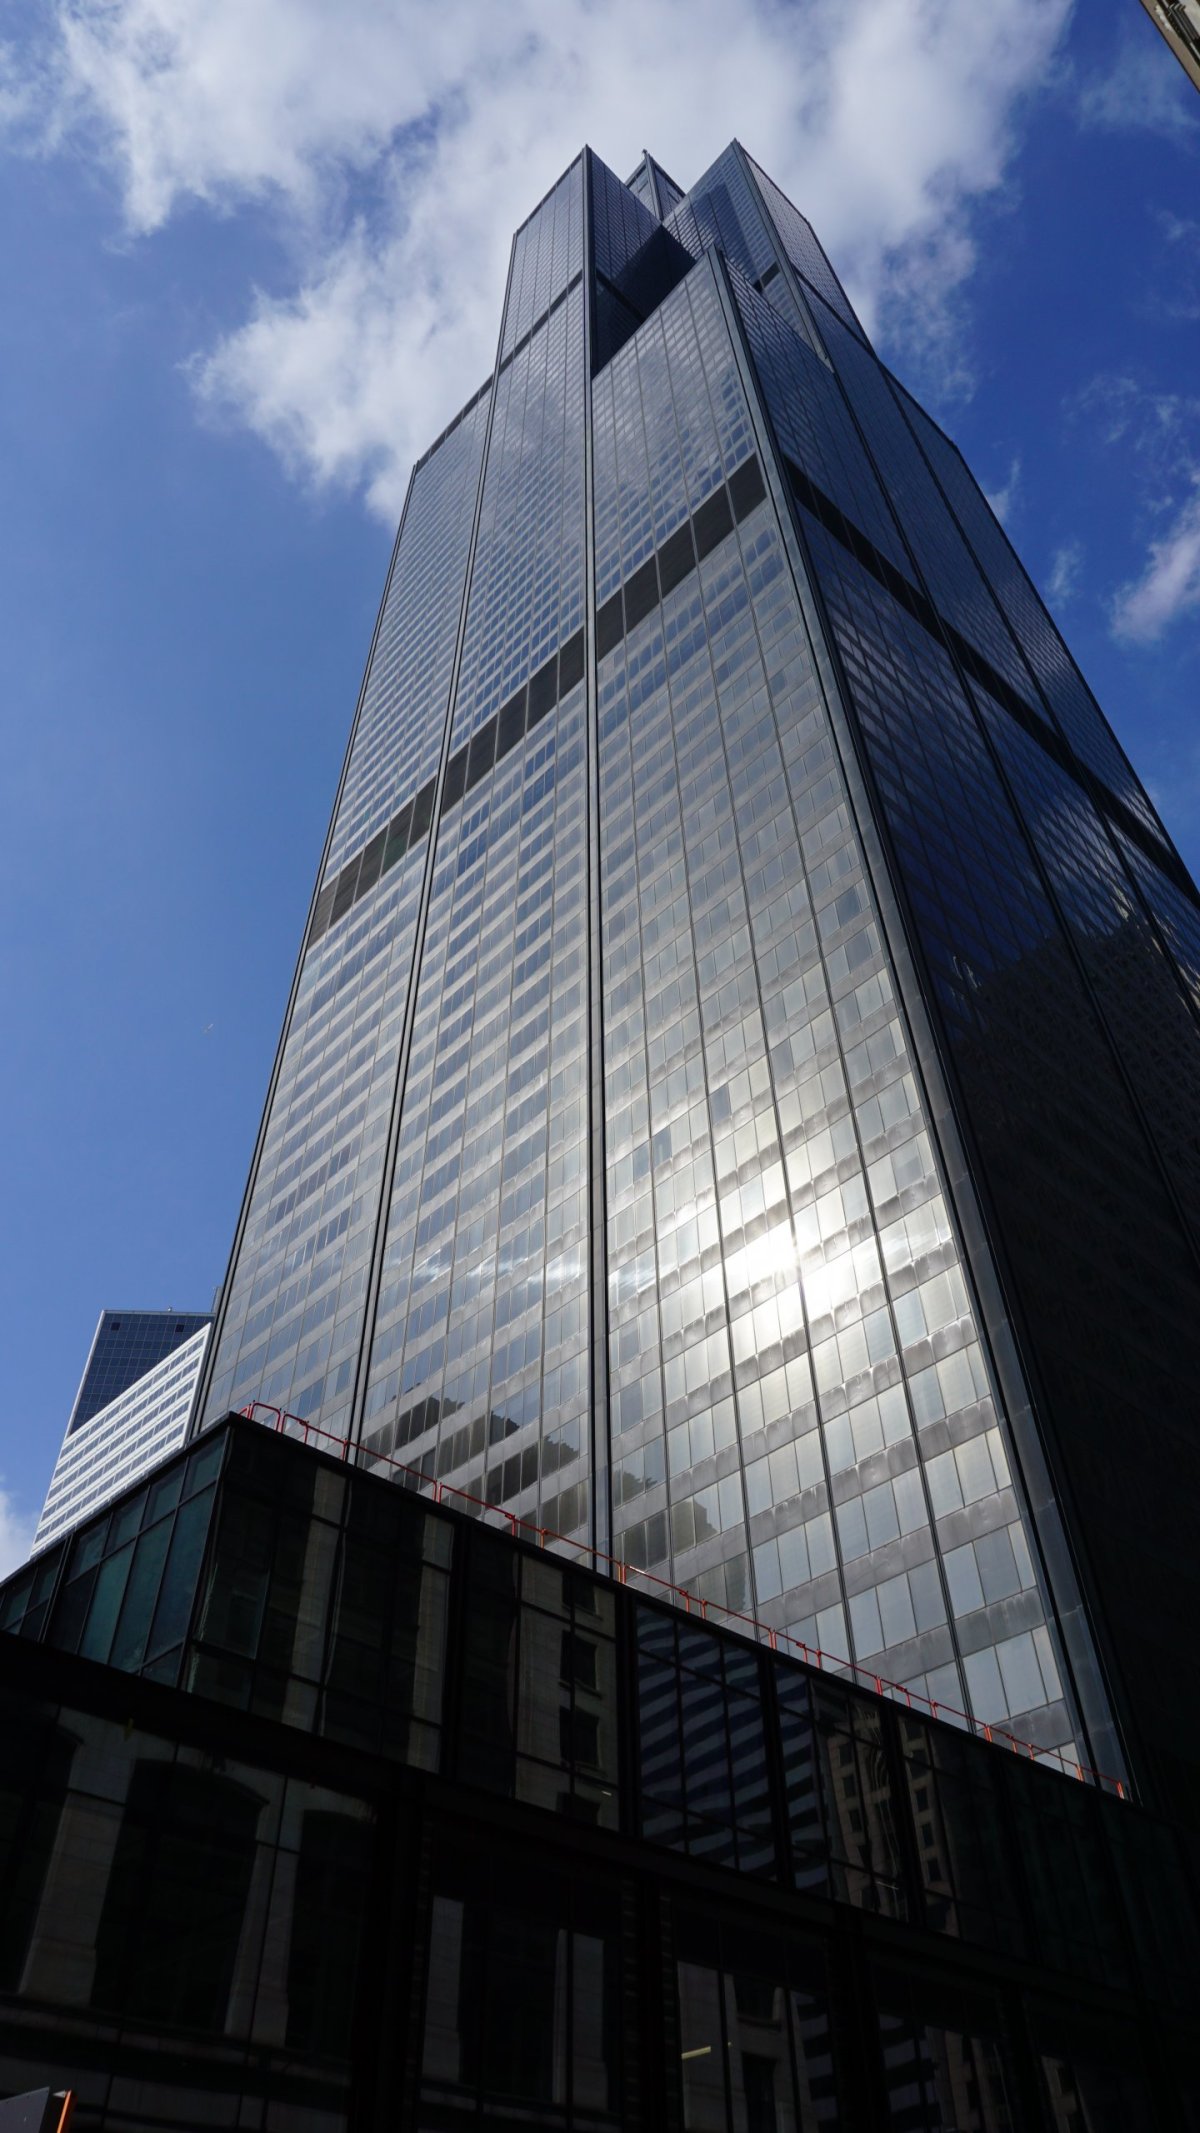 Willis Tower